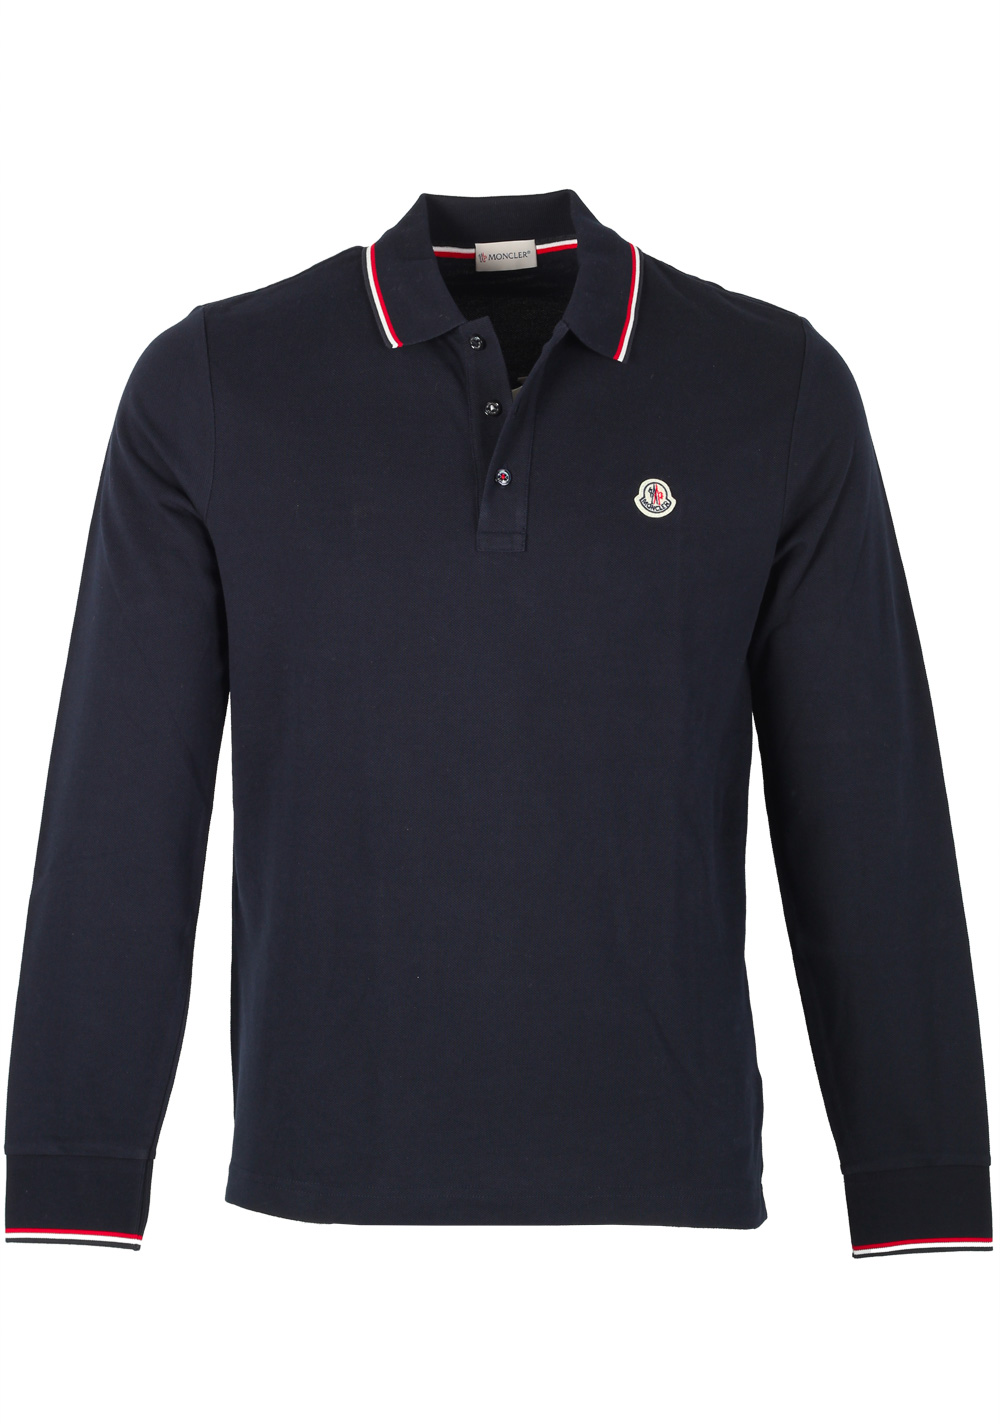 Moncler Blue Long Sleeve Polo Shirt Size XXL / 44R U.S. | Costume Limité